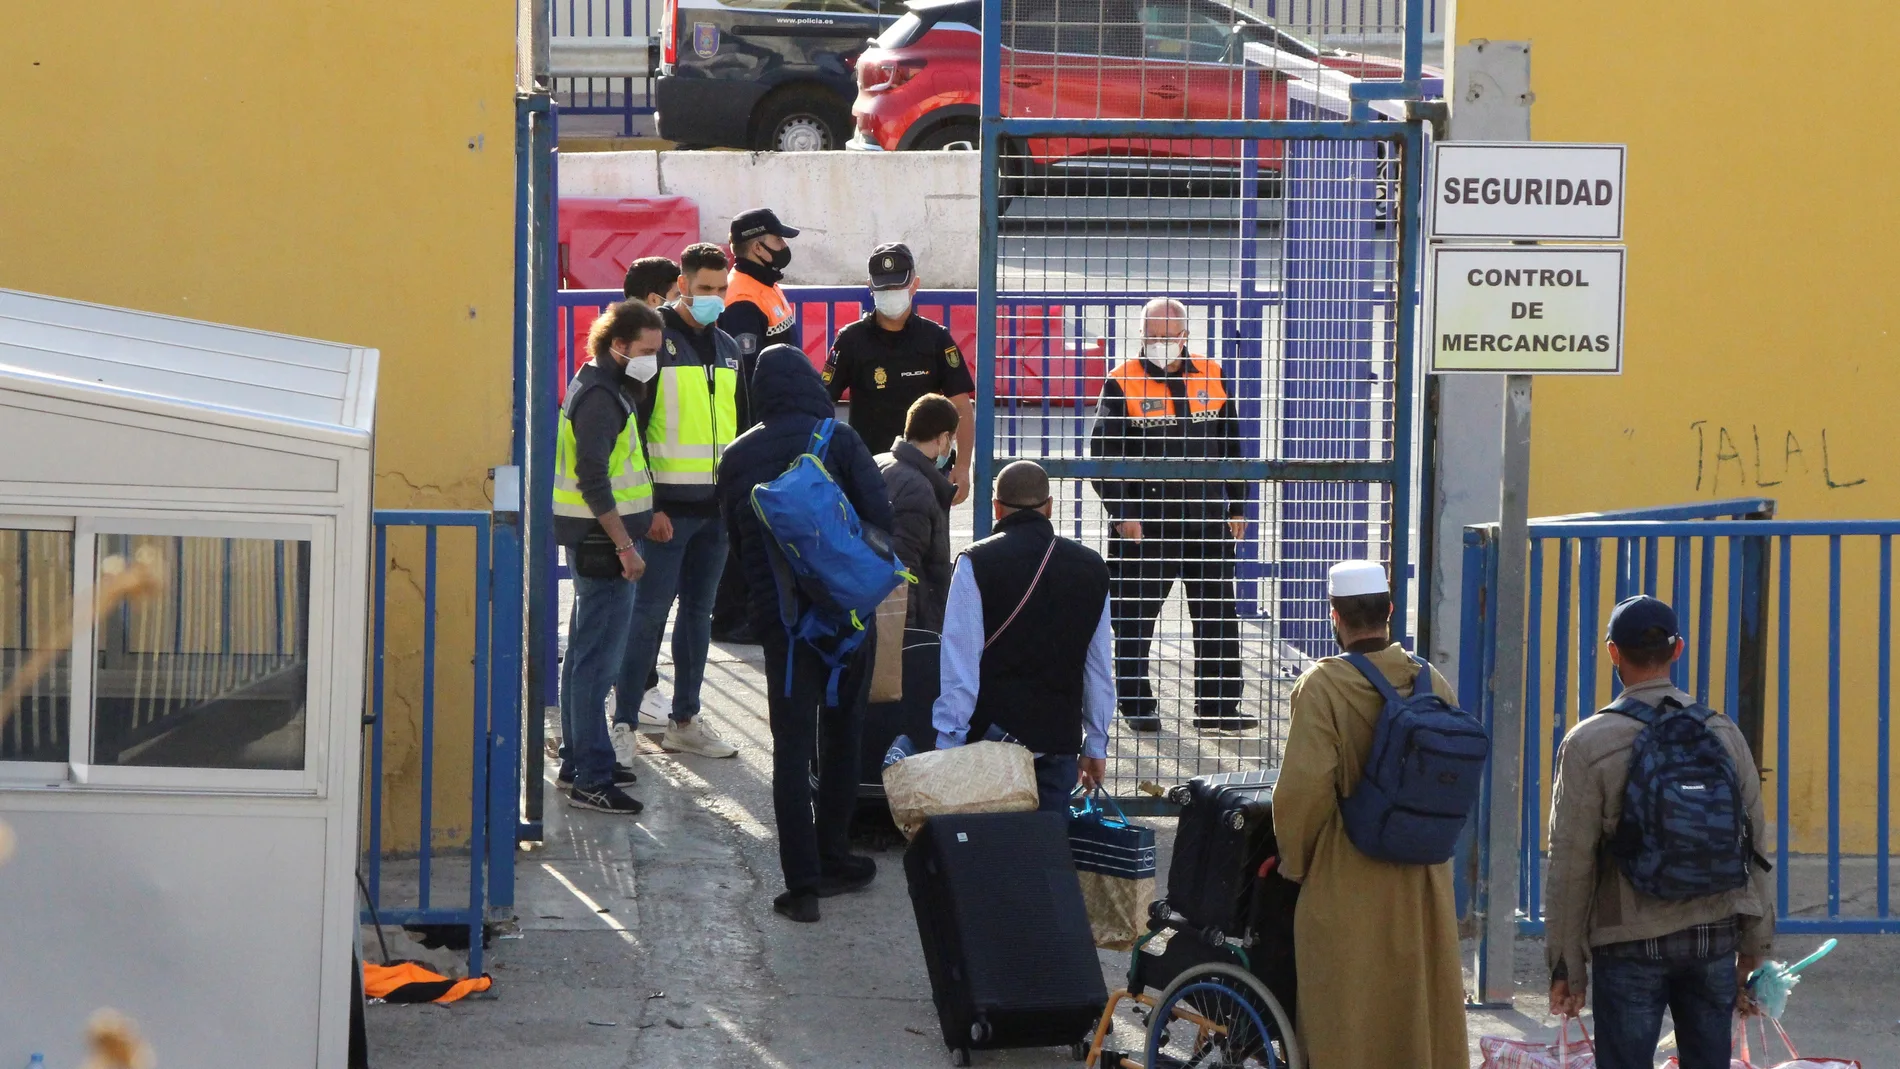 Las autoridades de Marruecos reabrieron en mayo la frontera del Tarajal que separa Ceuta de Marruecos para permitir el regreso de marroquíes que estaban viviendo en la ciudad autónoma desde que se decretó el cierre fronterizo. Lo mismo ocurrió en Melilla EFE/ Reduan Dris